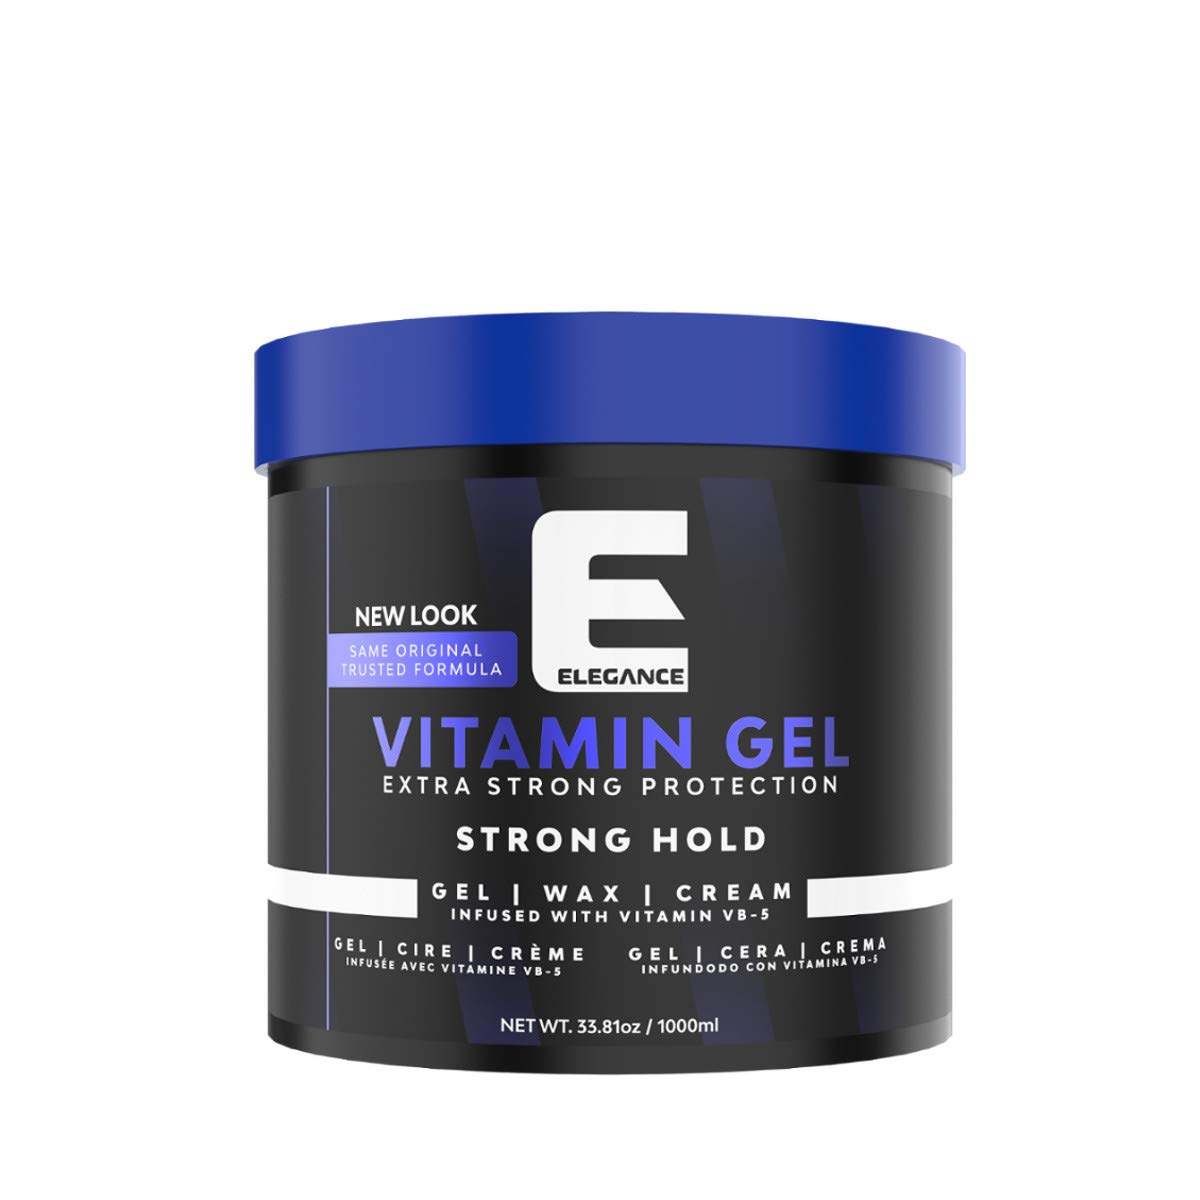 Elegance vitamin pro VB5 hair gel 33.81oz